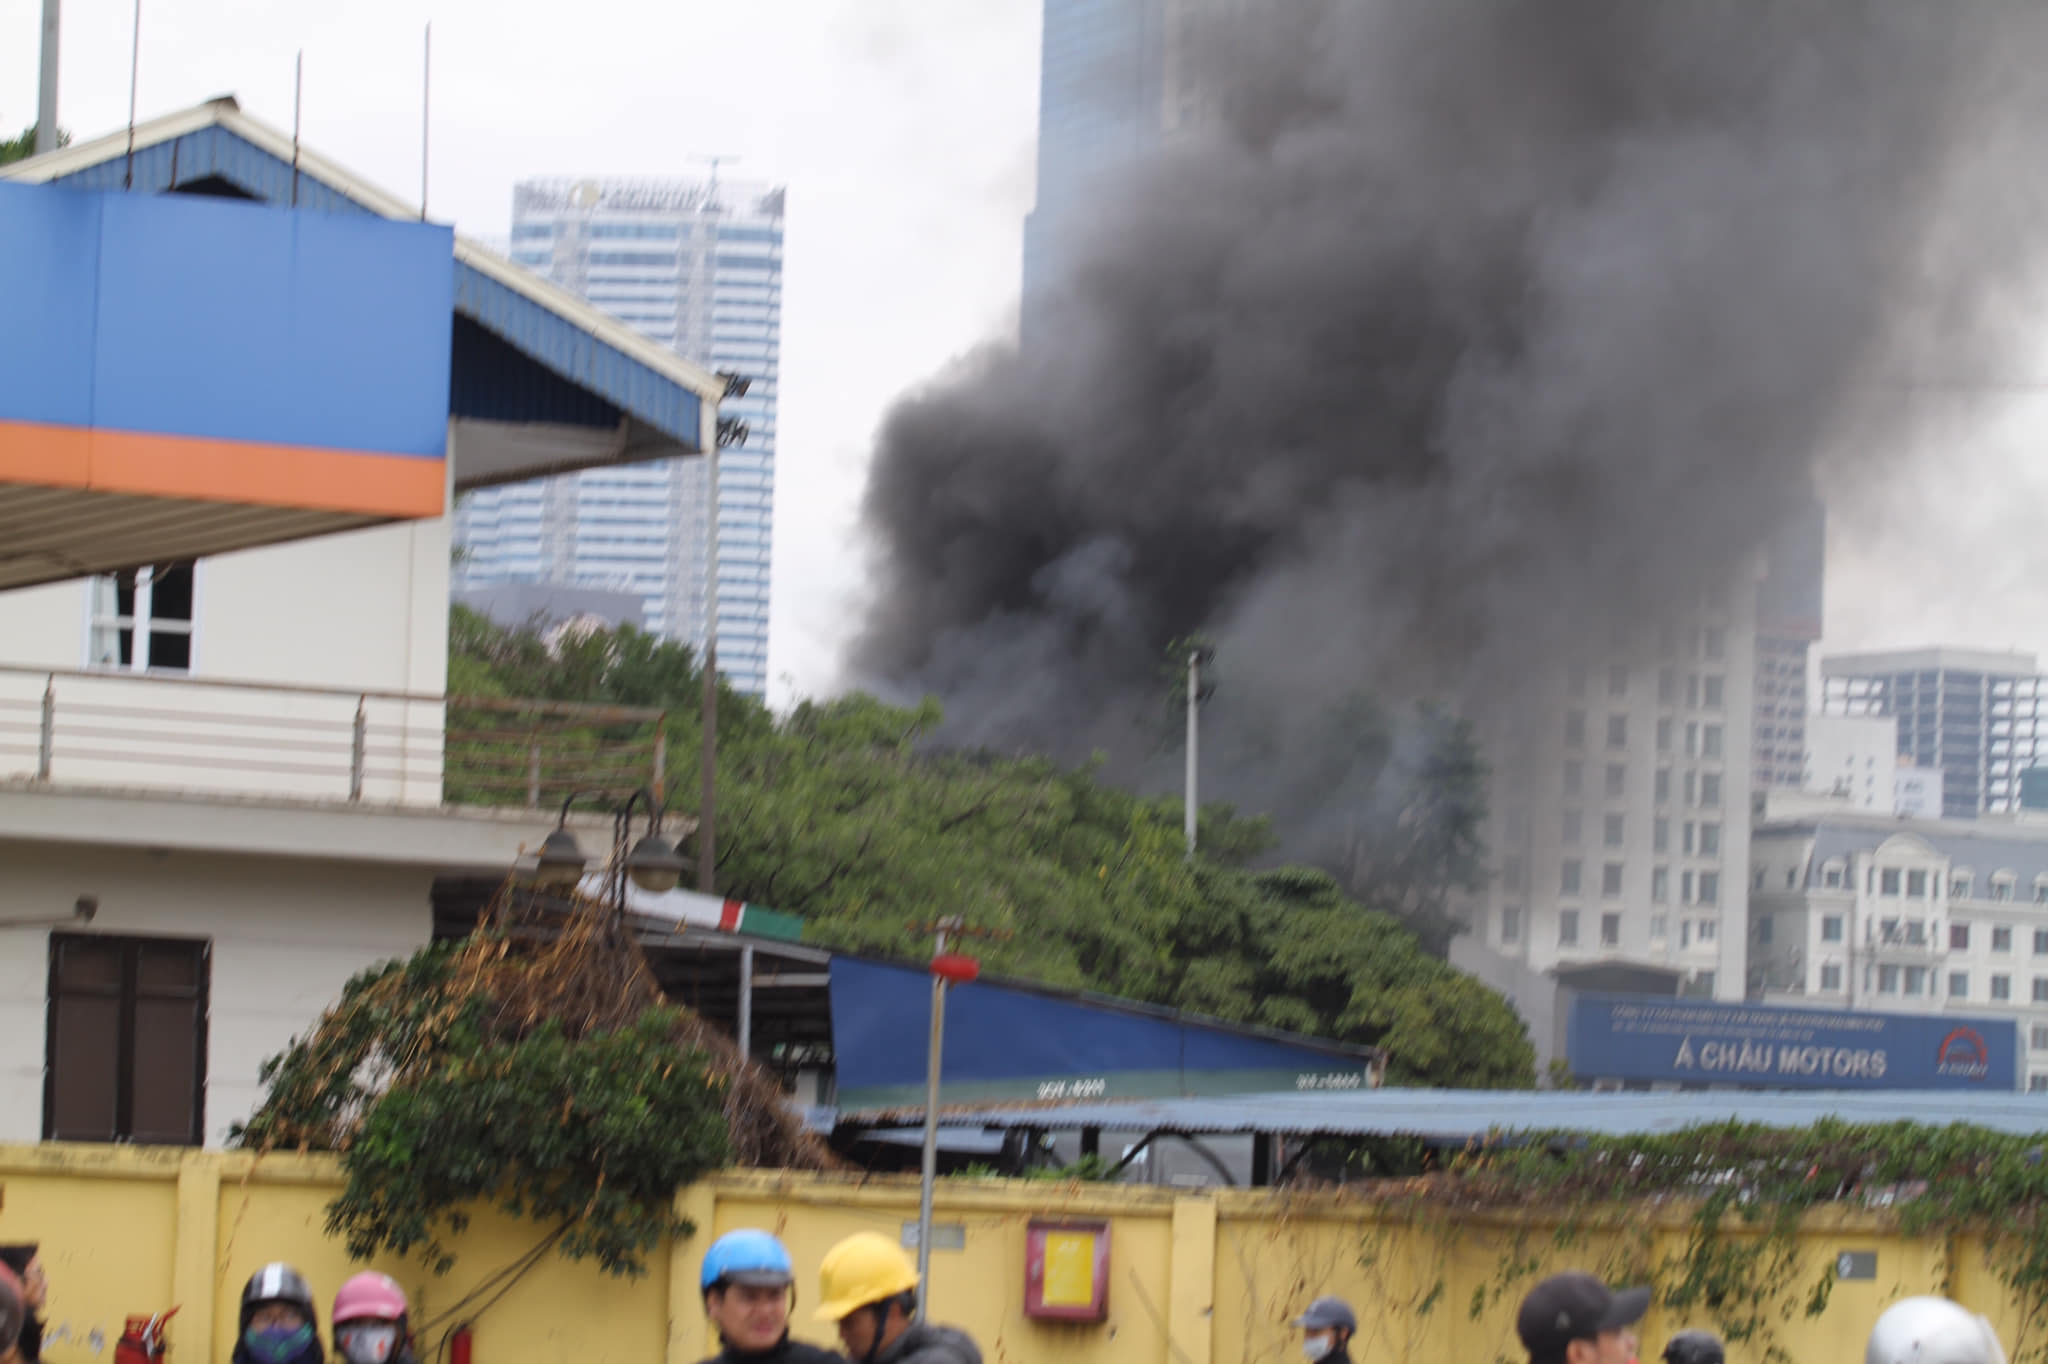 Cháy lớn tại xưởng sửa chữa ô tô sau trụ sở VFF, cột khói bốc cao nghi ngút - 4